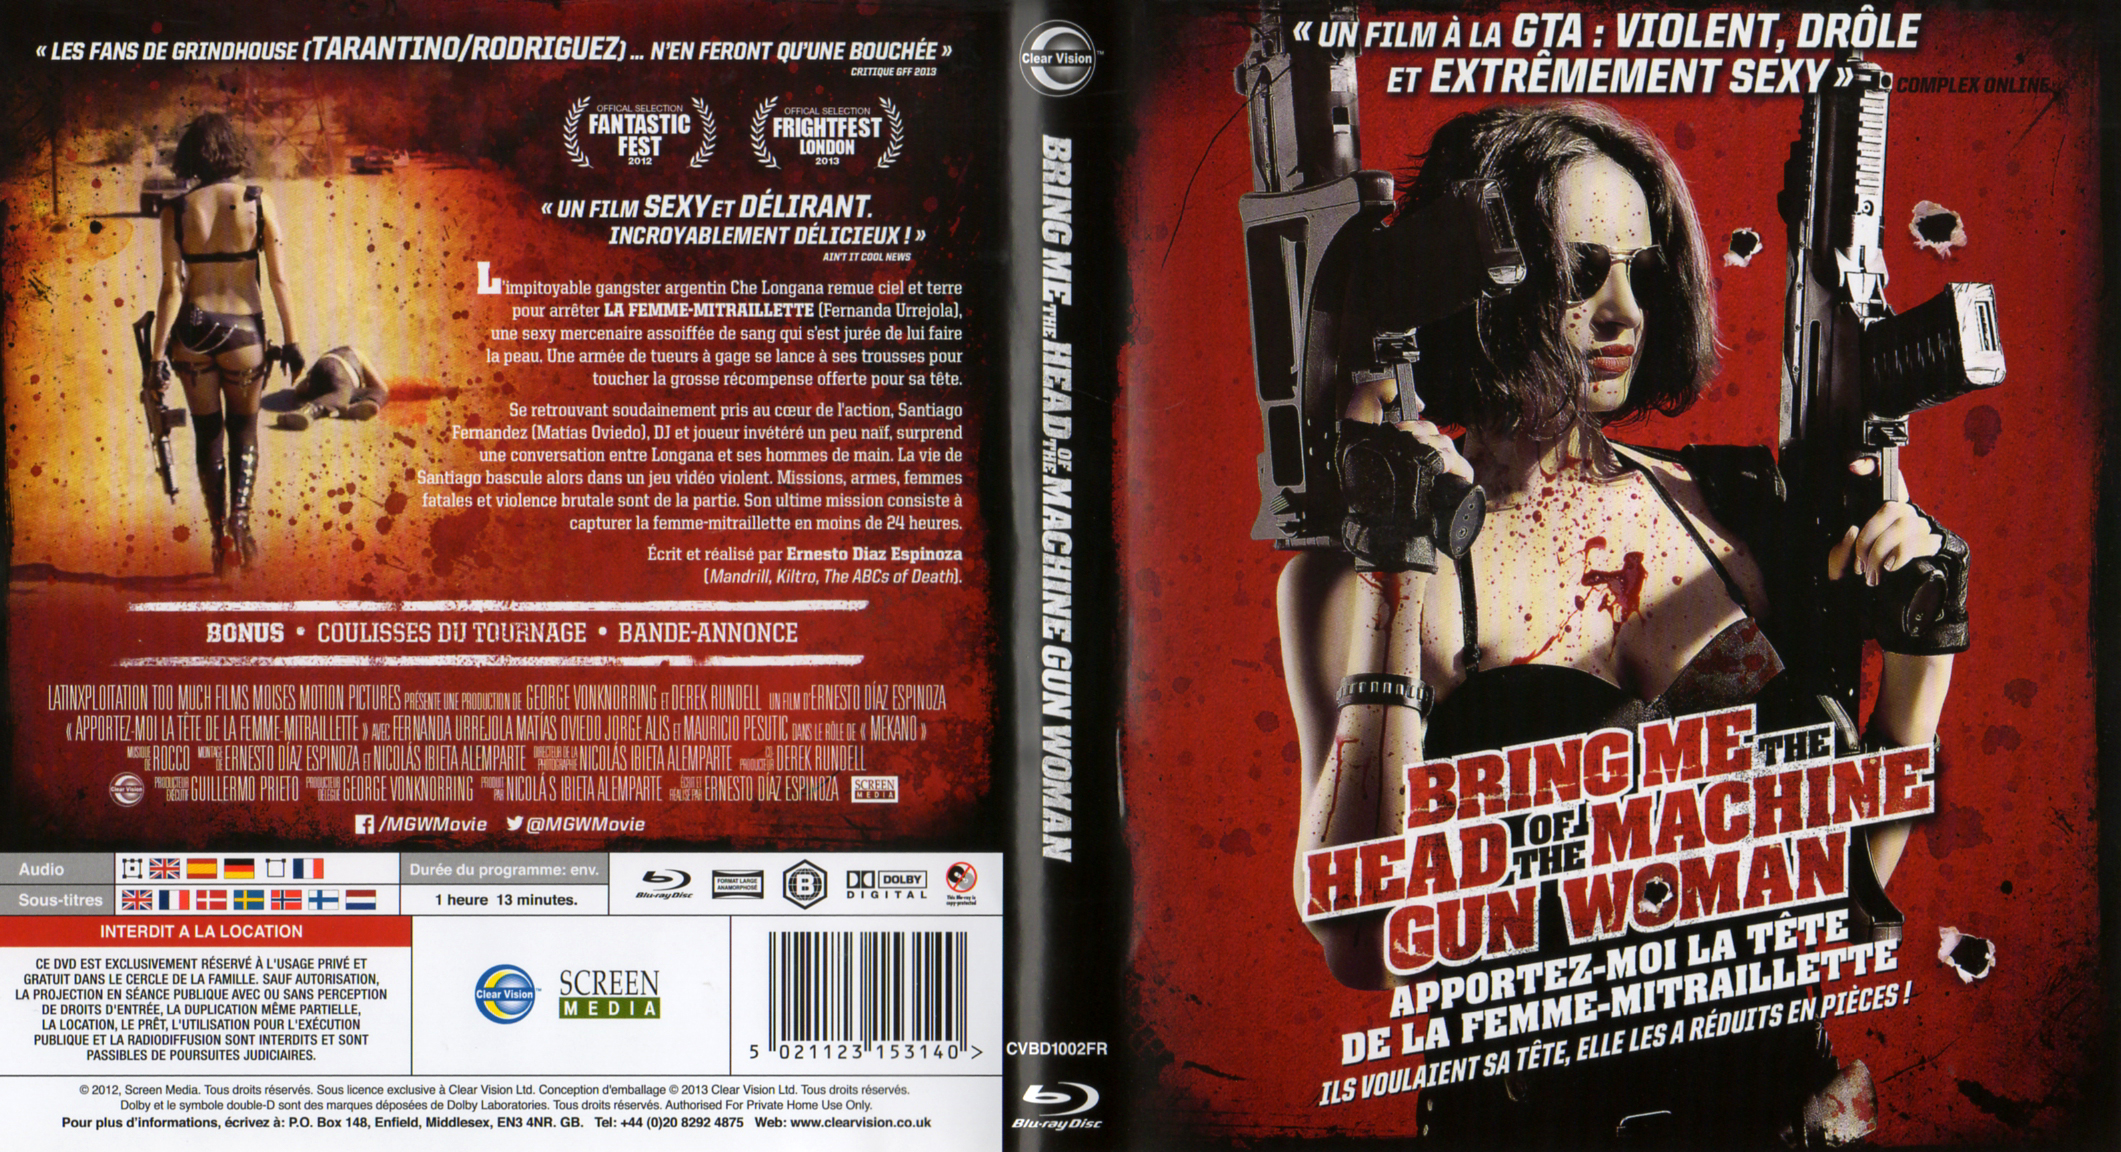 Jaquette DVD Bring Me The Head of The Machine Gun Woman Apportez-moi la tte de la femme-mitraillette (BLU-RAY)